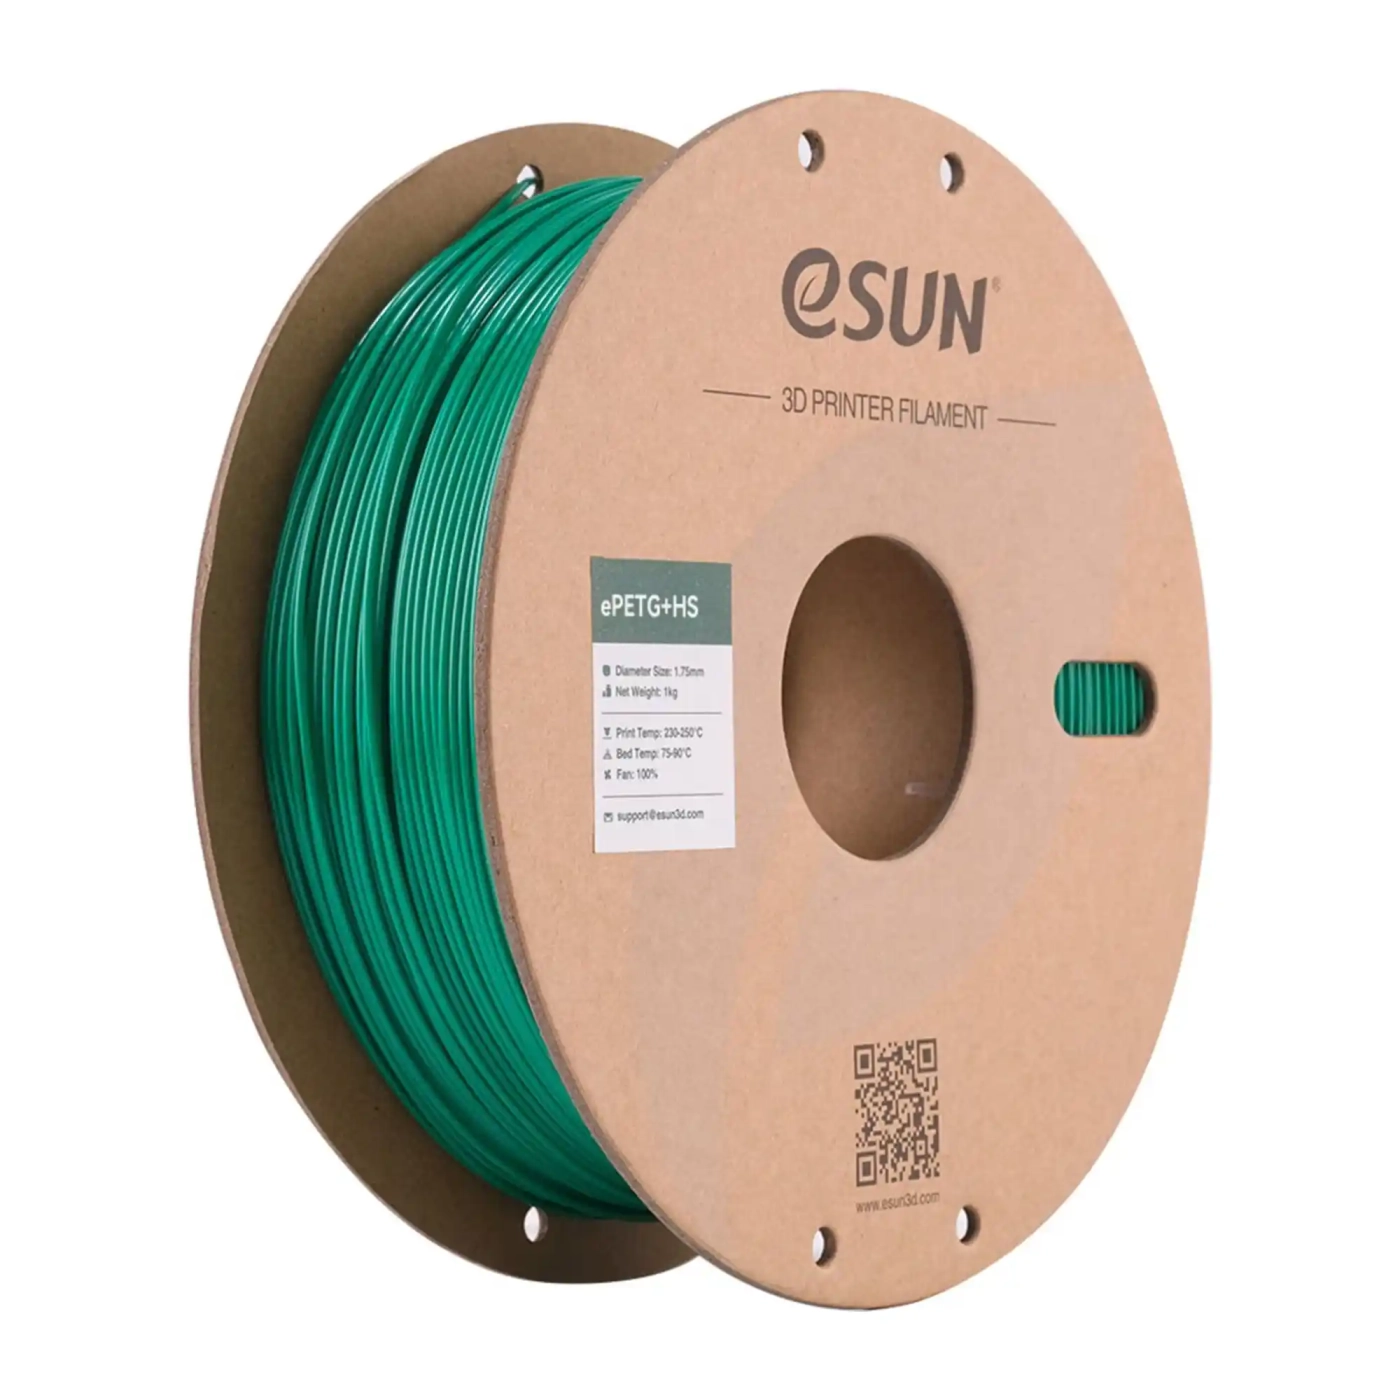 Купить ePETG+HS Filament (пластик) для 3D принтера Esun 1кг, 1.75мм, зеленый (ePETG+HS-175SG1) - фото 1